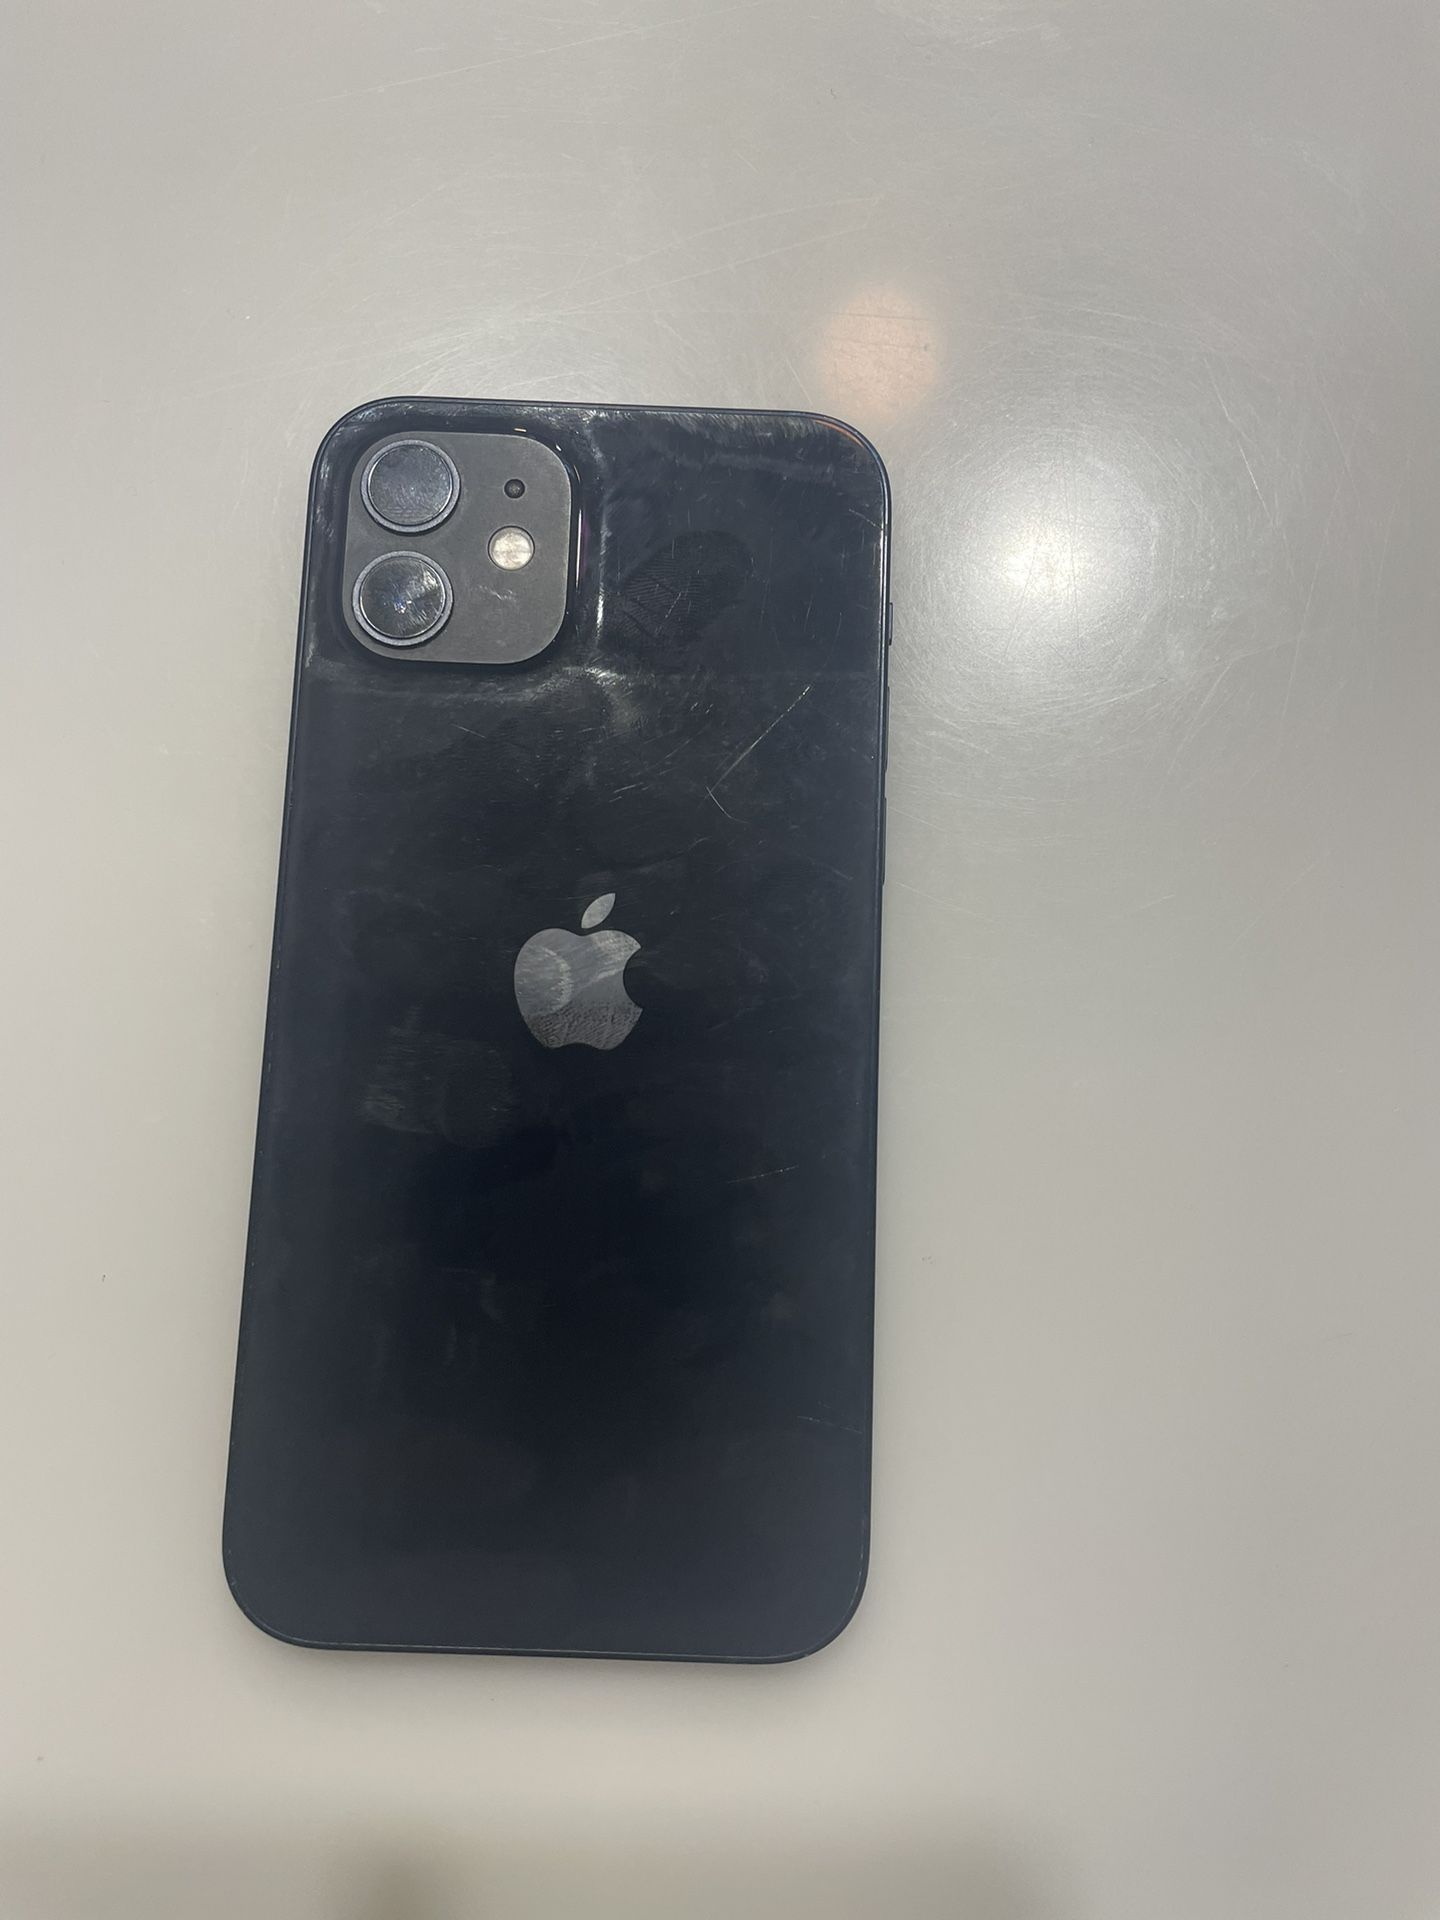 Apple iPhone  12 128 GB Unlocked- Black 